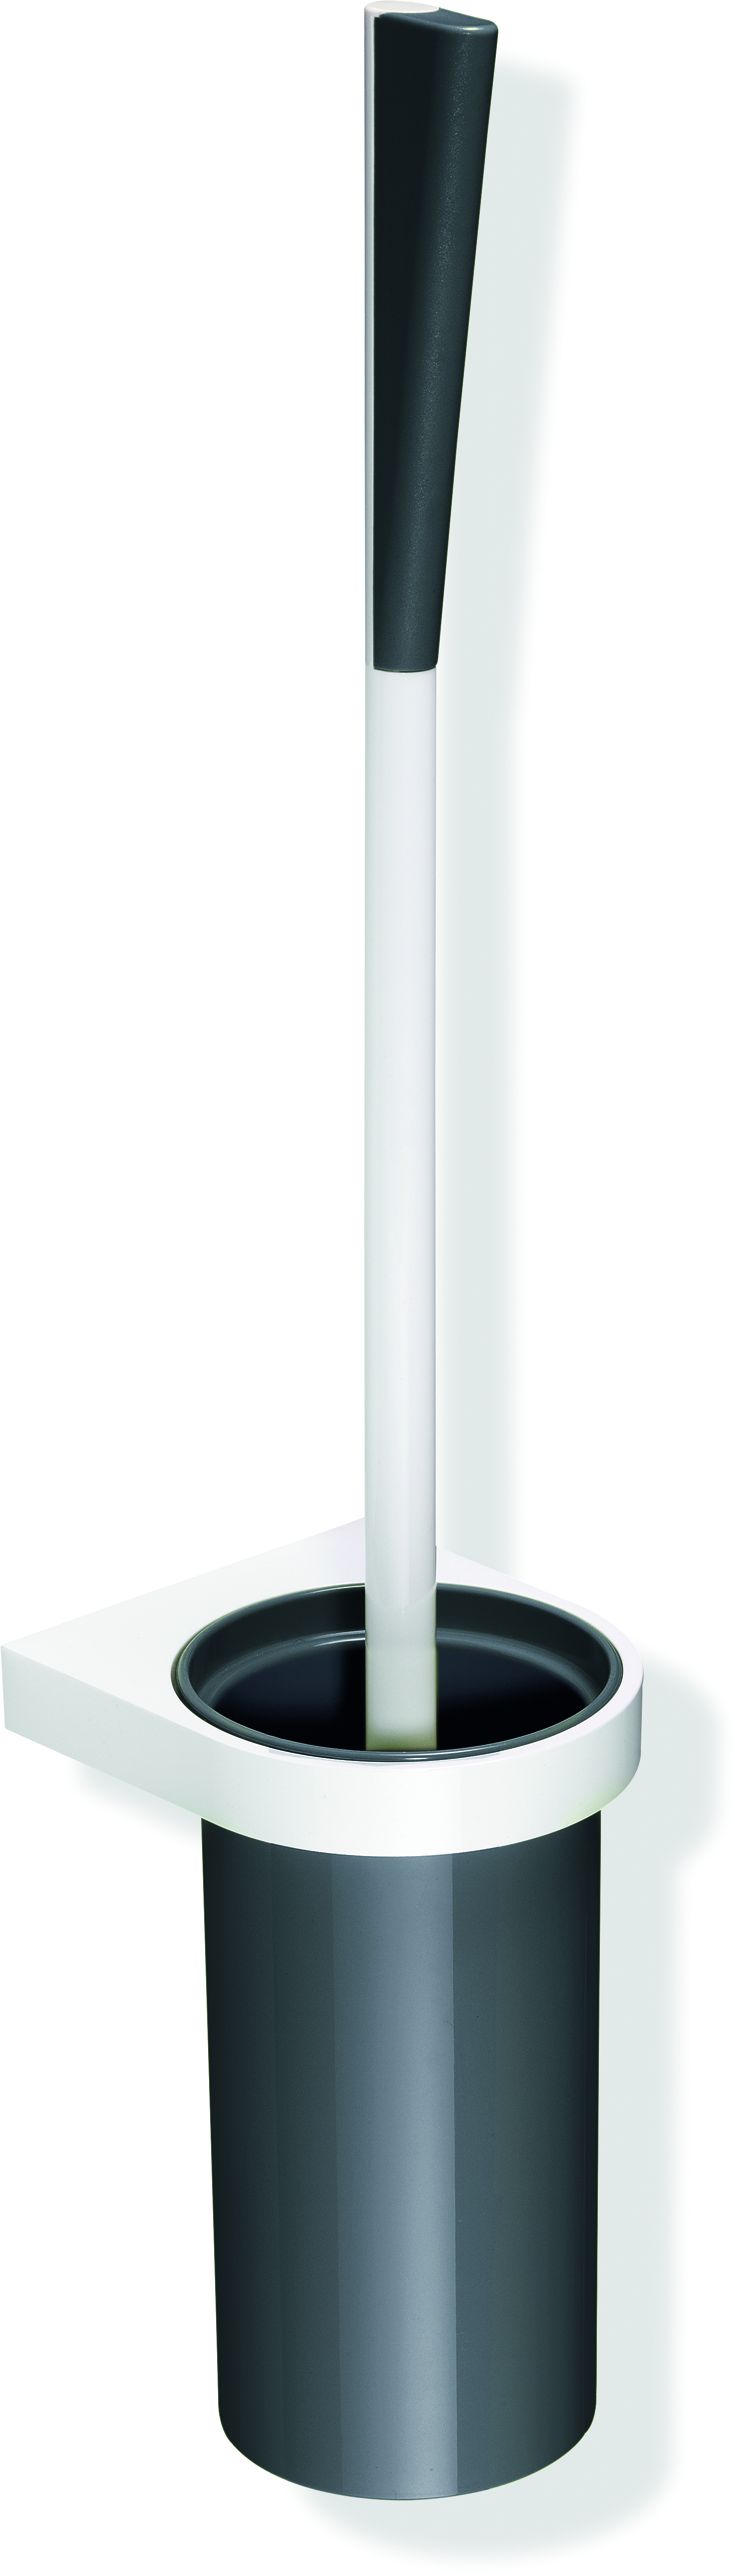 Hewi System 800 K Toilettenbürstengarnitur 800.20.2009992 Behälter Kunststoff, Halter und Bürstenstiel reinweiß, anthrazitgrau